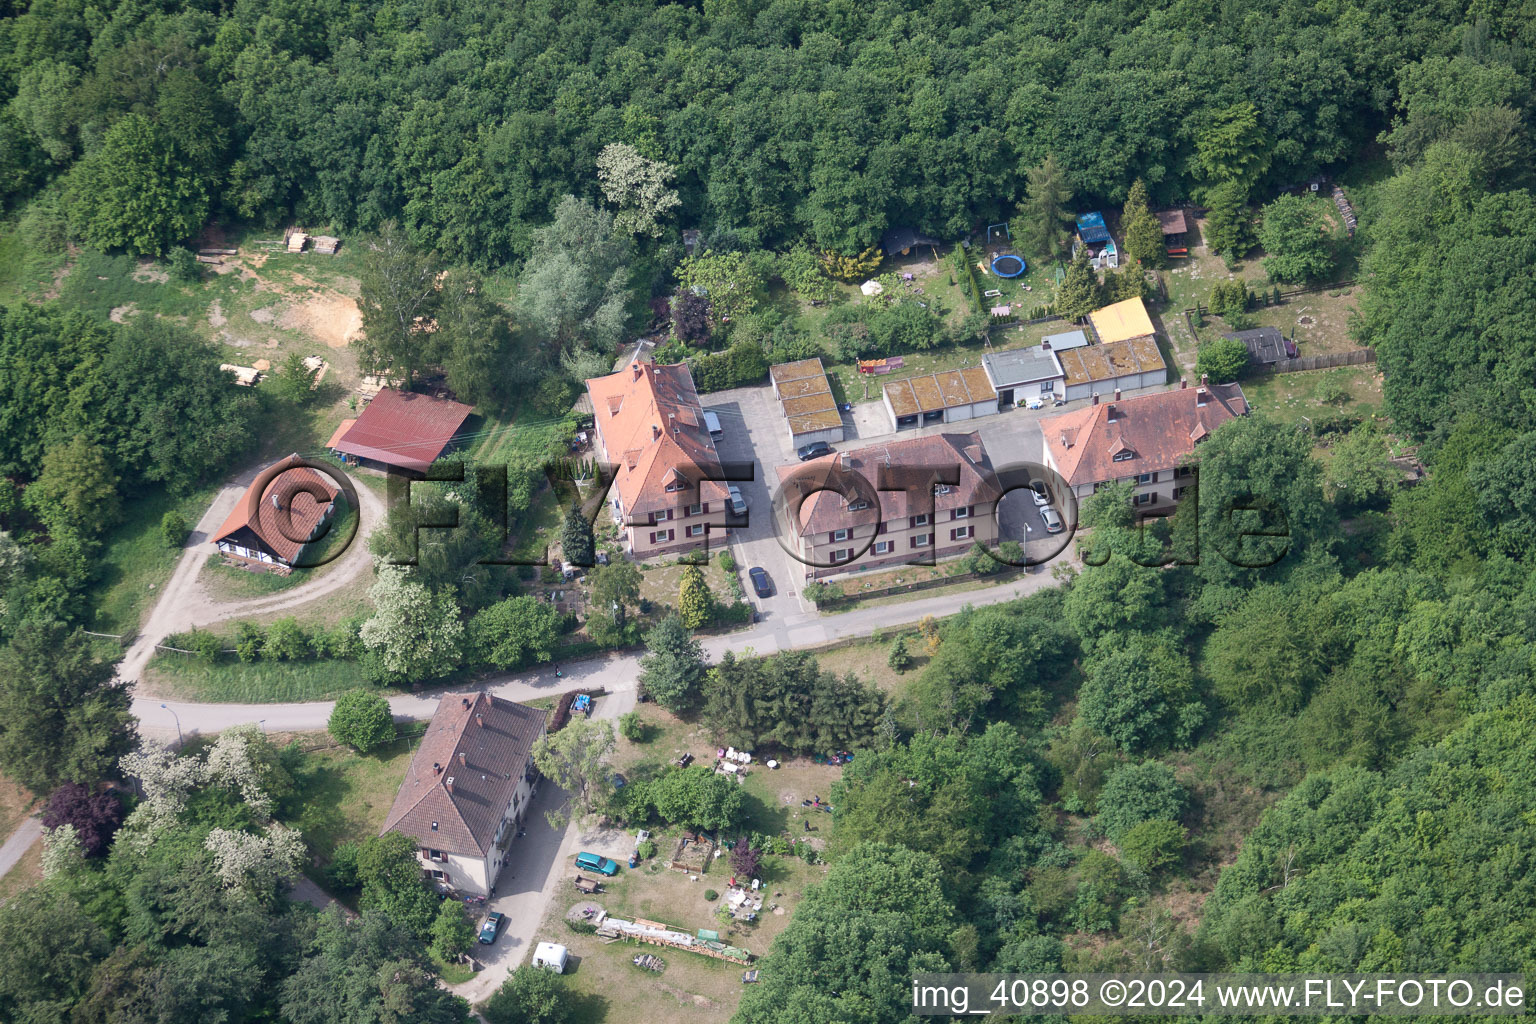 Scheibenhardt (Pfalz), Seufzerallee 4 im Bundesland Rheinland-Pfalz, Deutschland aus der Luft betrachtet